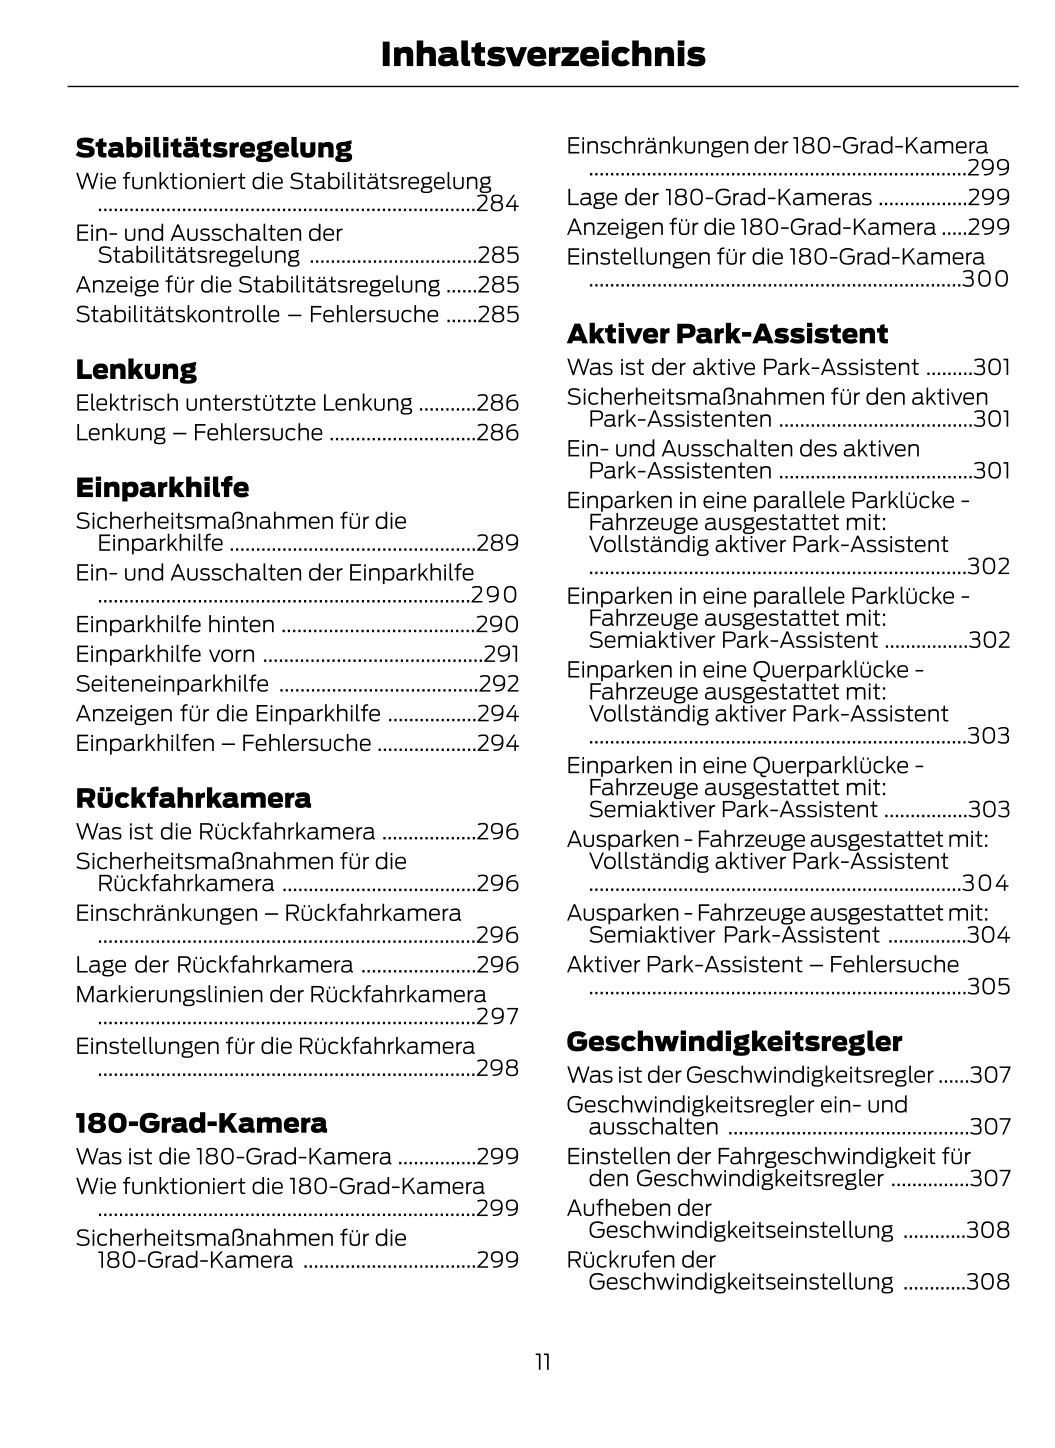 2022-2024 Ford Kuga Gebruikershandleiding | Duits